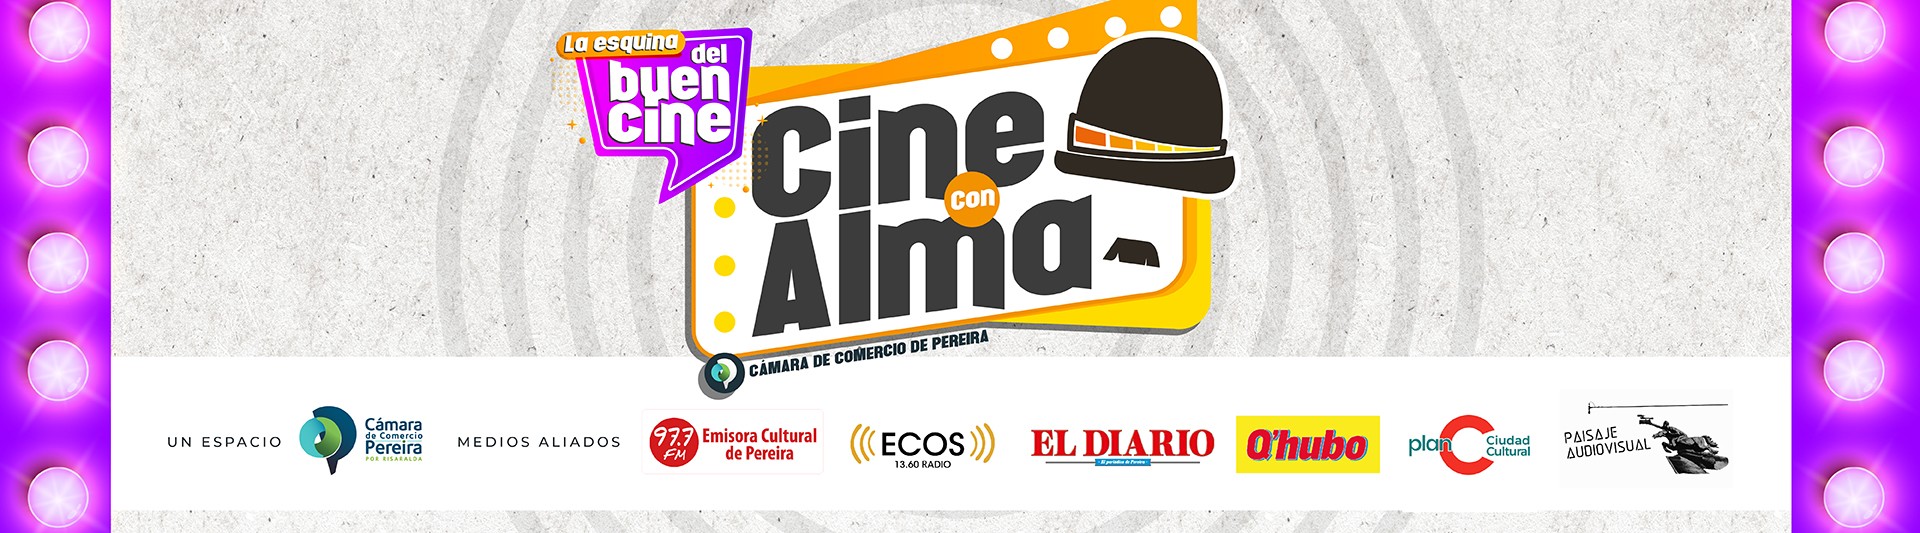 Banner de cine con Alma